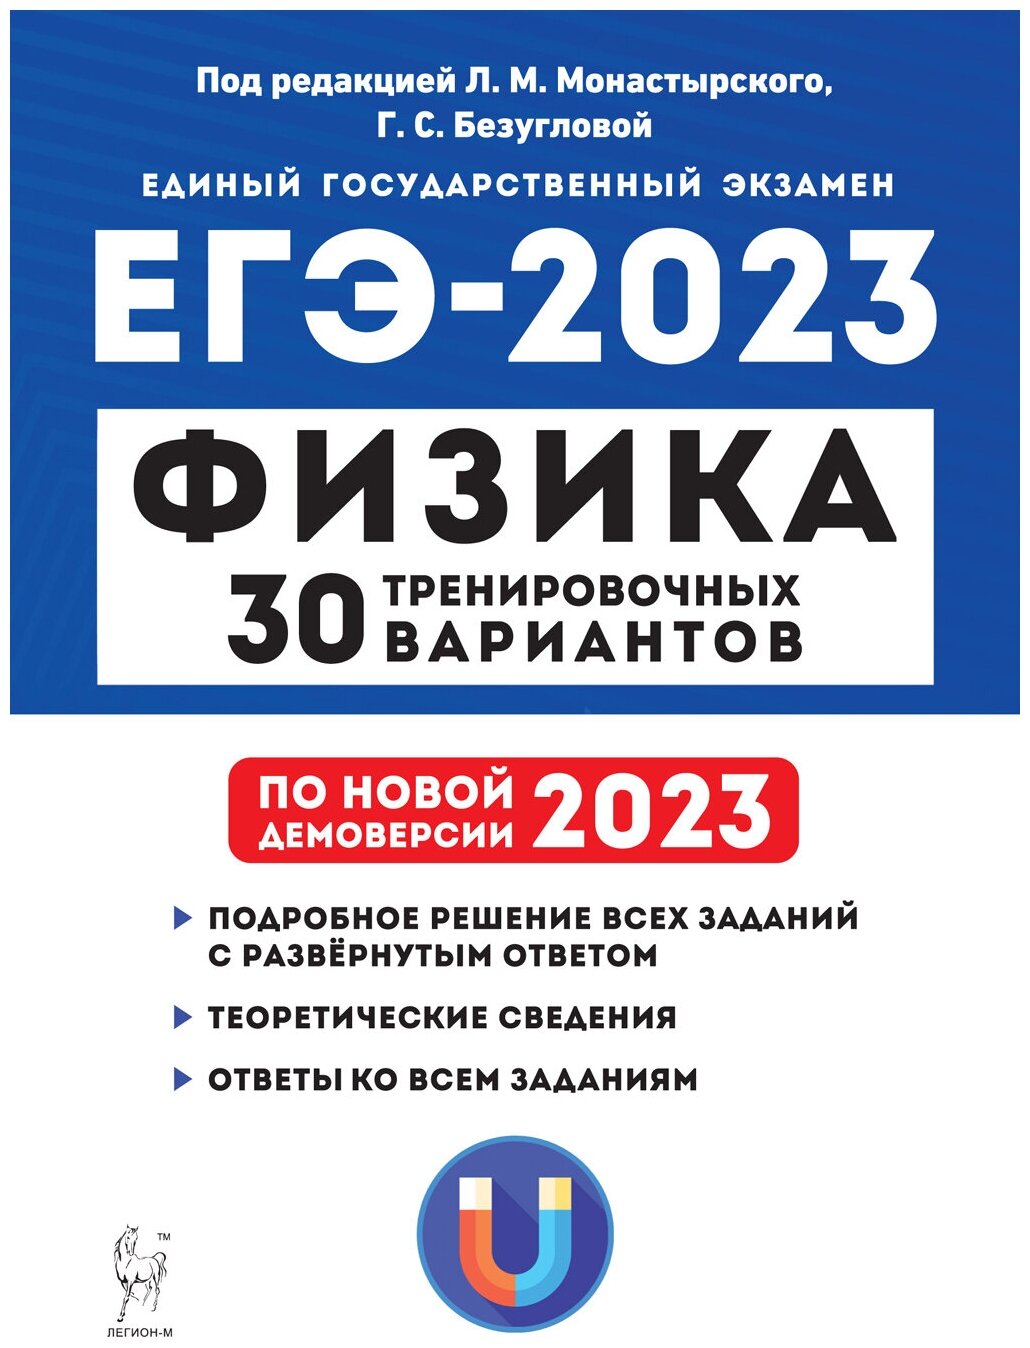 Физика. Подготовка к ЕГЭ-2023. 30 тренировочных вариантов по демоверсии 2023 года